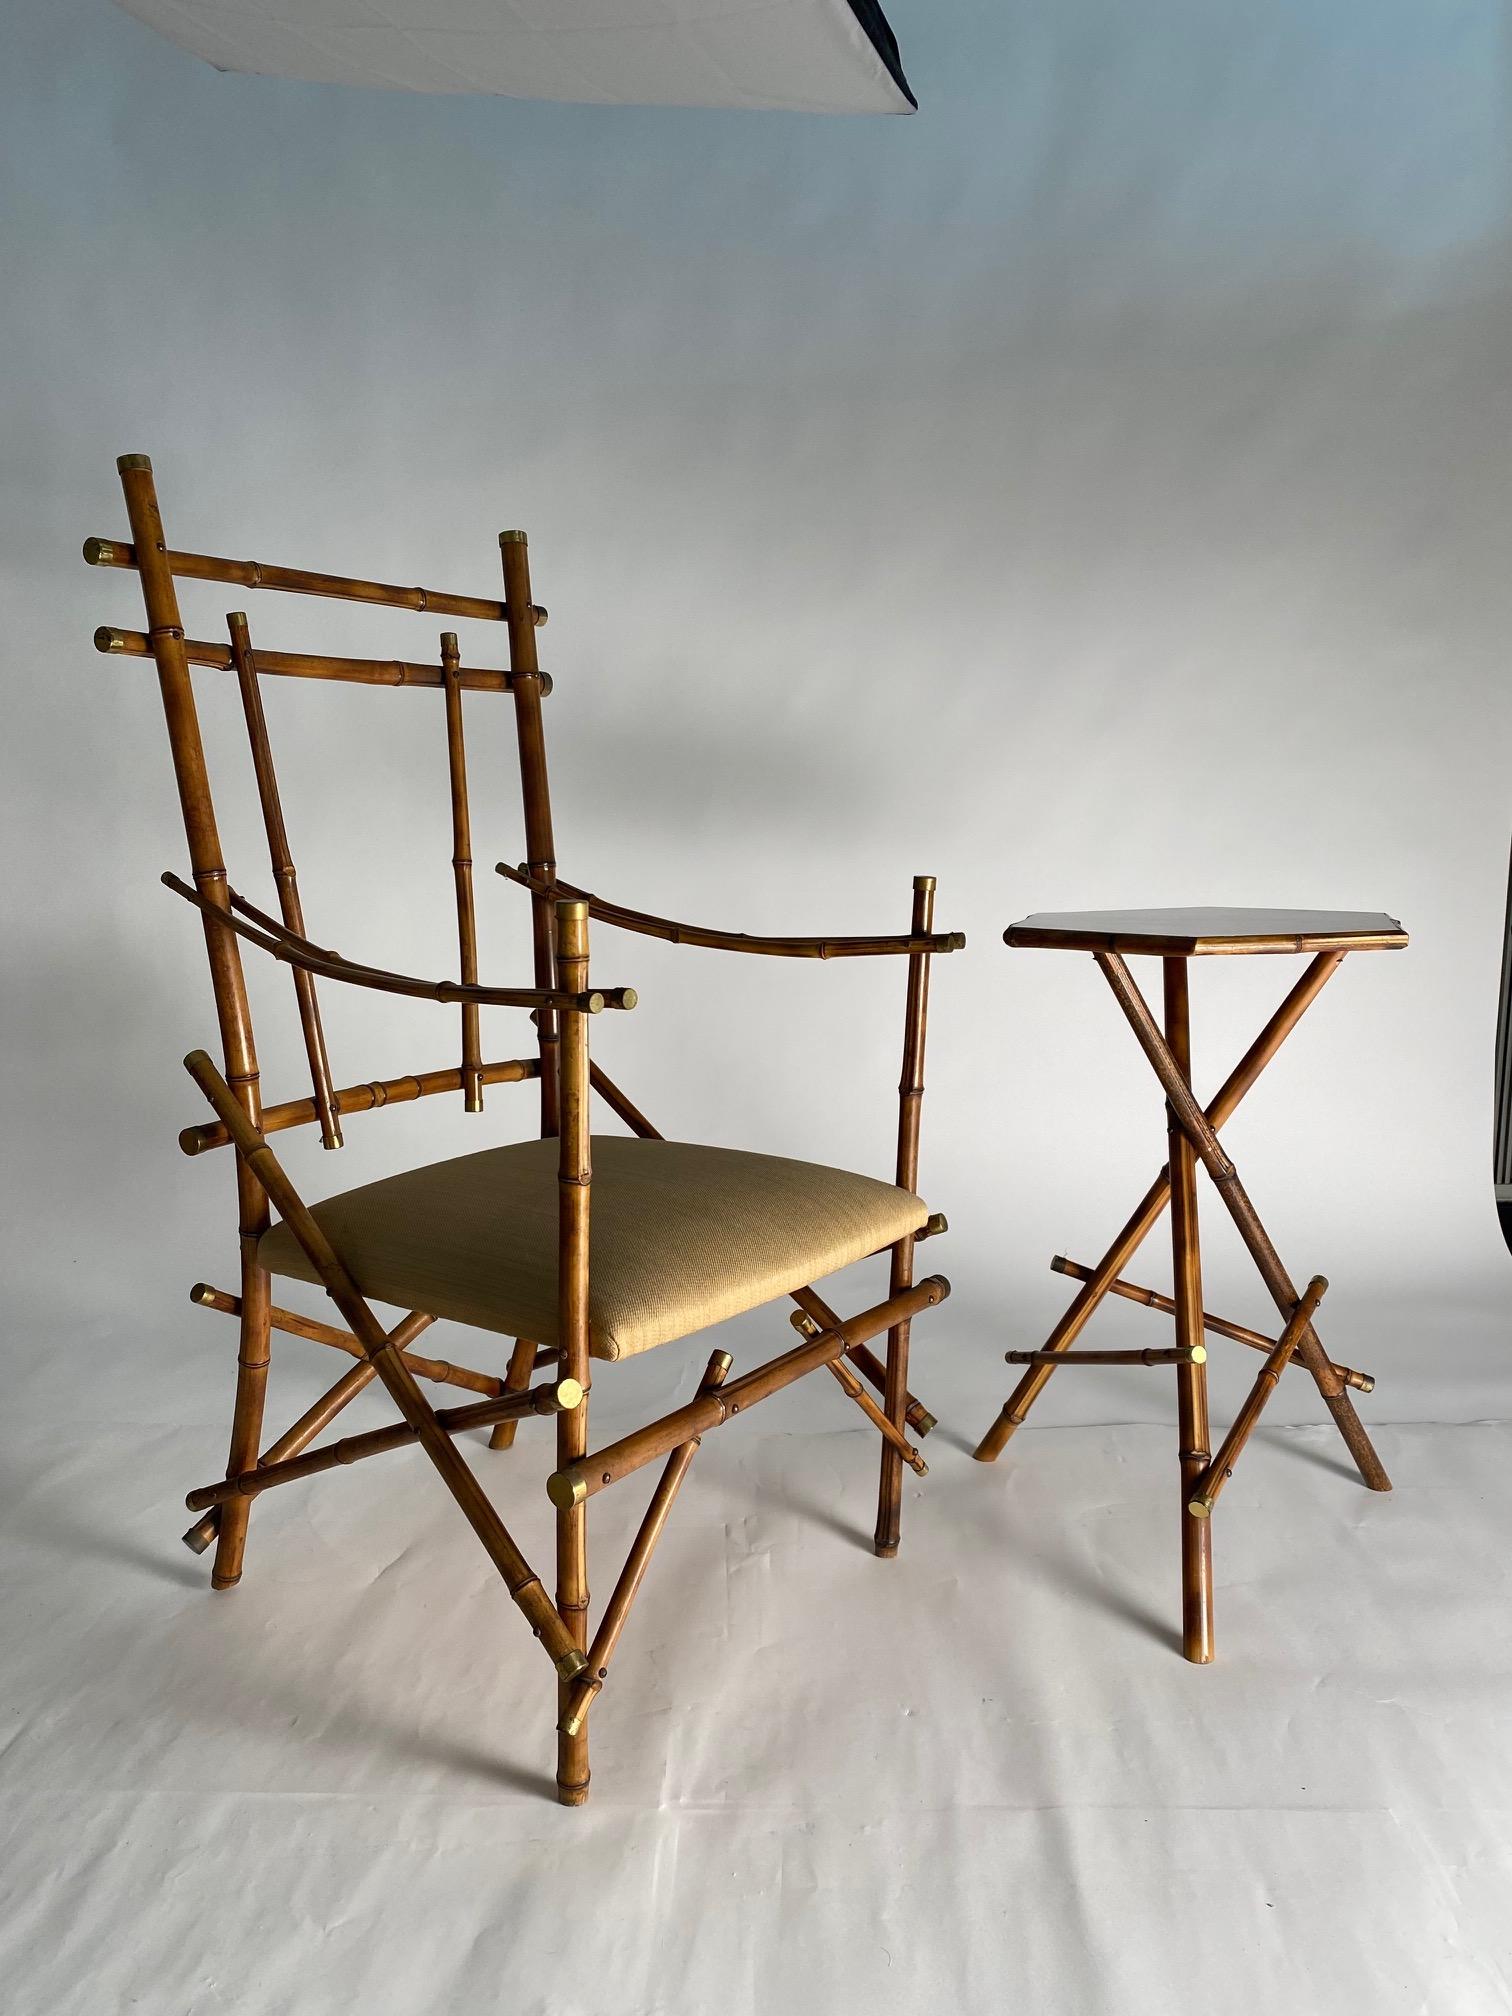 Rare et très raffinée paire de fauteuils et table basse en bambou et laiton, Italie, années 1970.

Vivai Del sud production